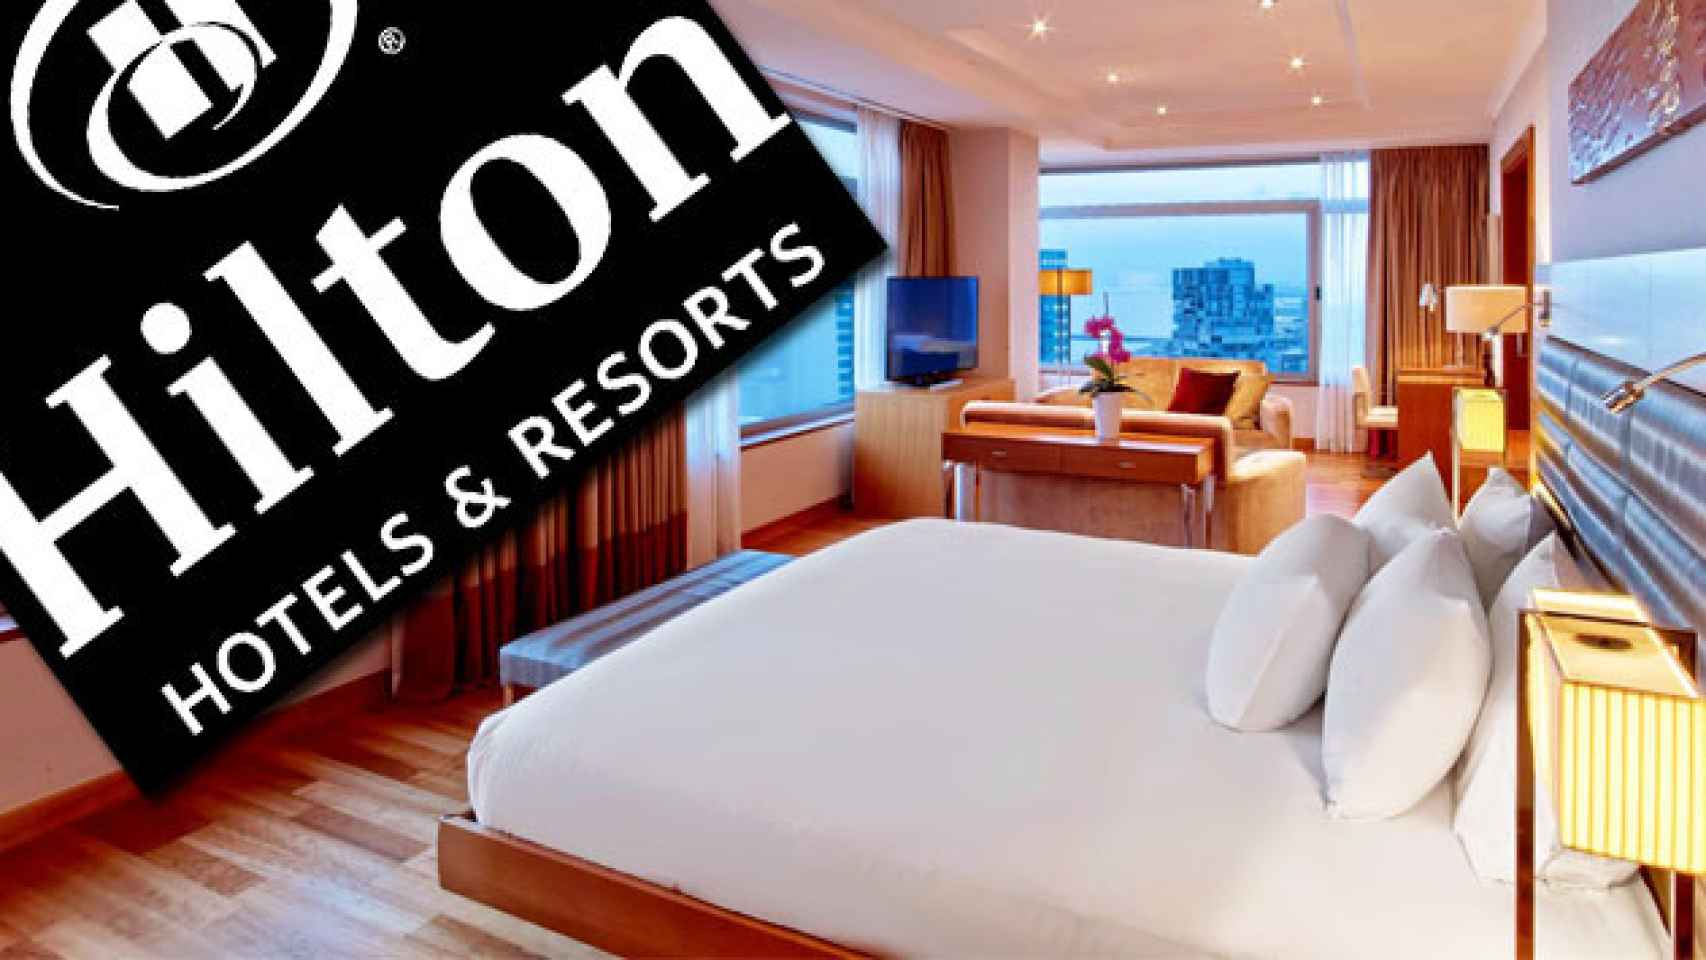 Una habitación del hotel Hilton Diagonal Mar de Barcelona y el logo de la cadena / CG